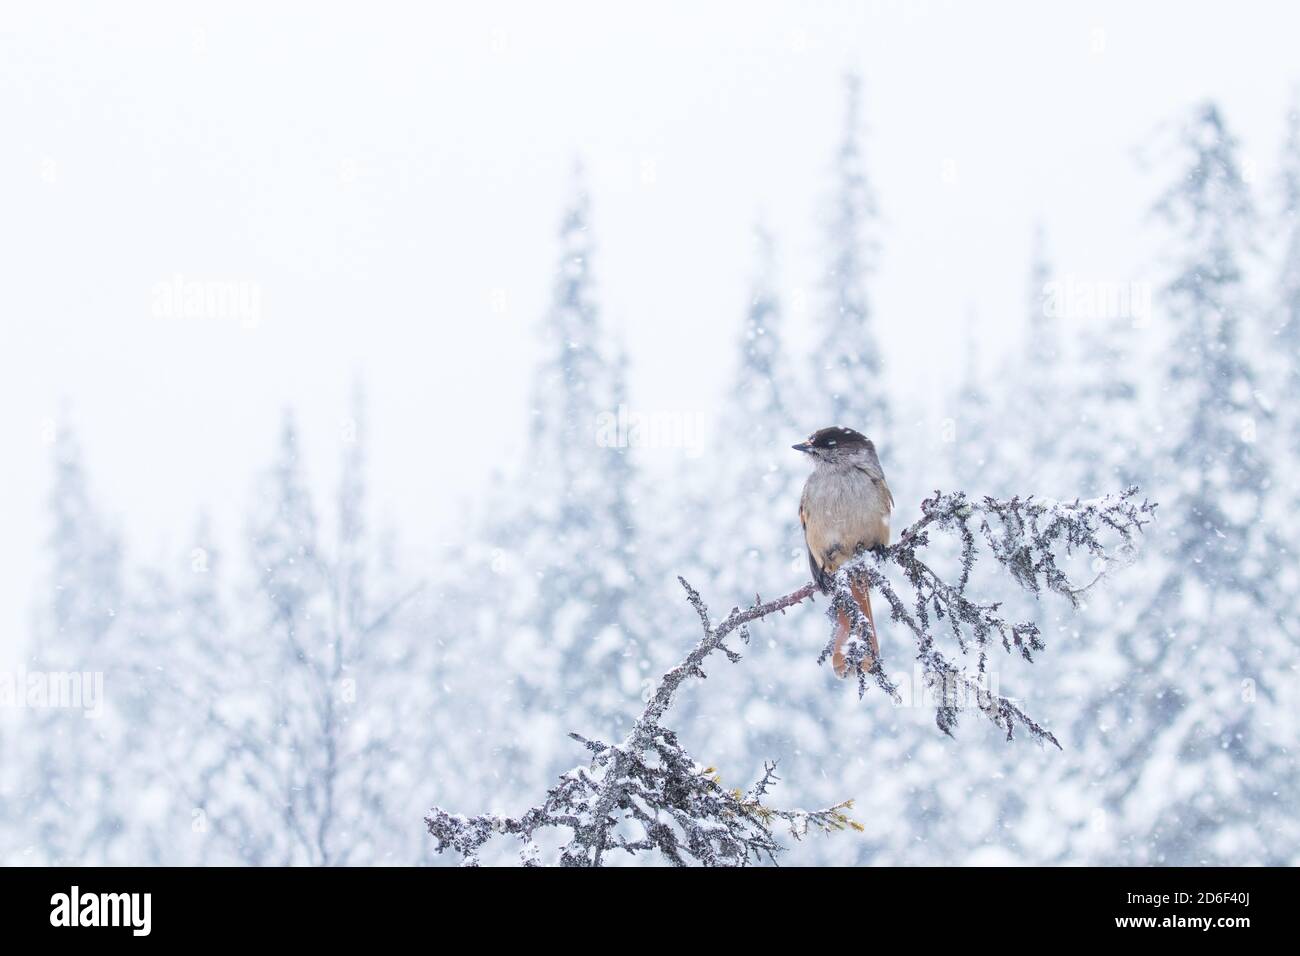 Süßer Sibirischer eichelhäher, Perisoreus infaustus, bei starkem Schneefall in einem kalten Taigawald, Winterwunderland Finnisch-Lapplands, Nordeuropa. Stockfoto